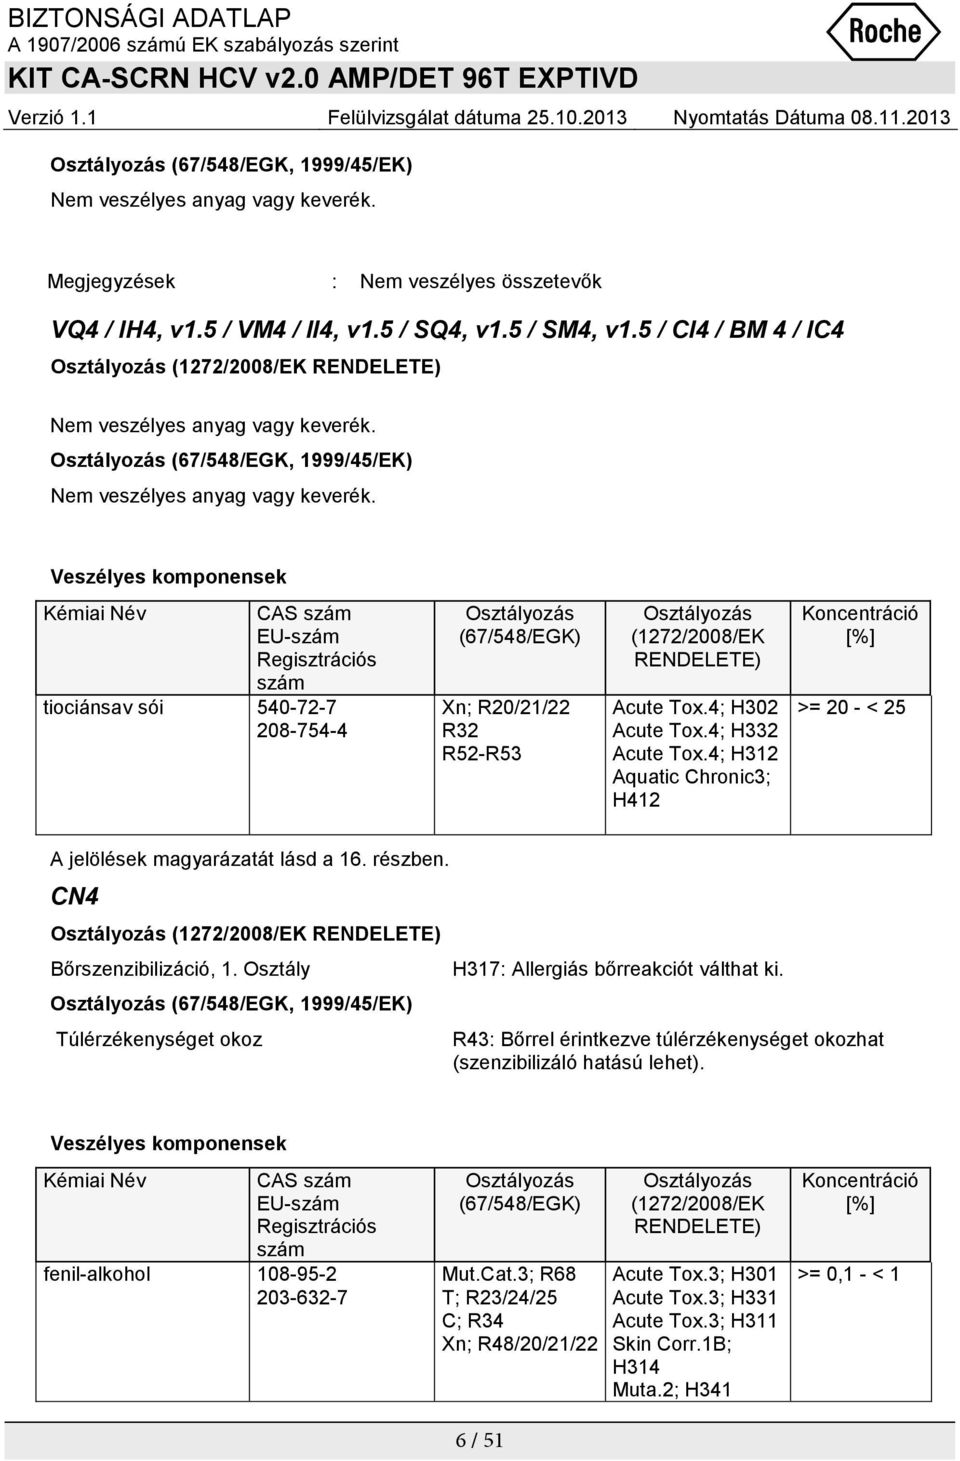 Veszélyes komponensek Kémiai Név CAS szám EU-szám Regisztrációs szám tiociánsav sói 540-72-7 208-754-4 Osztályozás (67/548/EGK) Xn; R20/21/22 R32 R52-R53 Osztályozás (1272/2008/EK RENDELETE) Acute